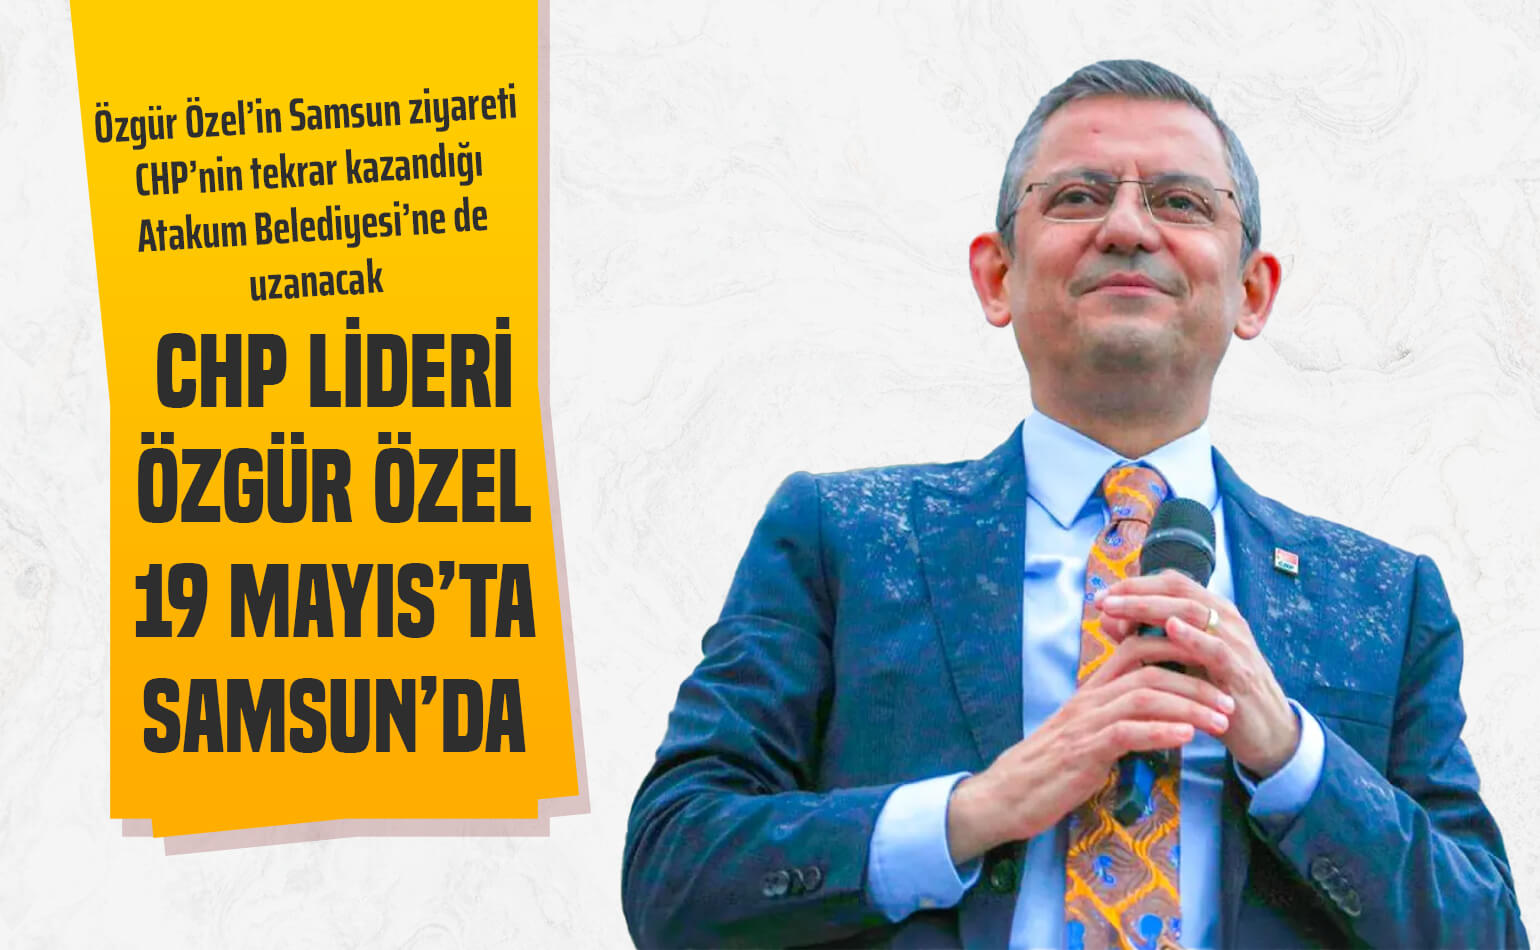 CHP Lideri Özgür Özel, 19 Mayıs’ta Samsun’da: Atakum Belediyesi’ne Ziyaret Bekleniyor